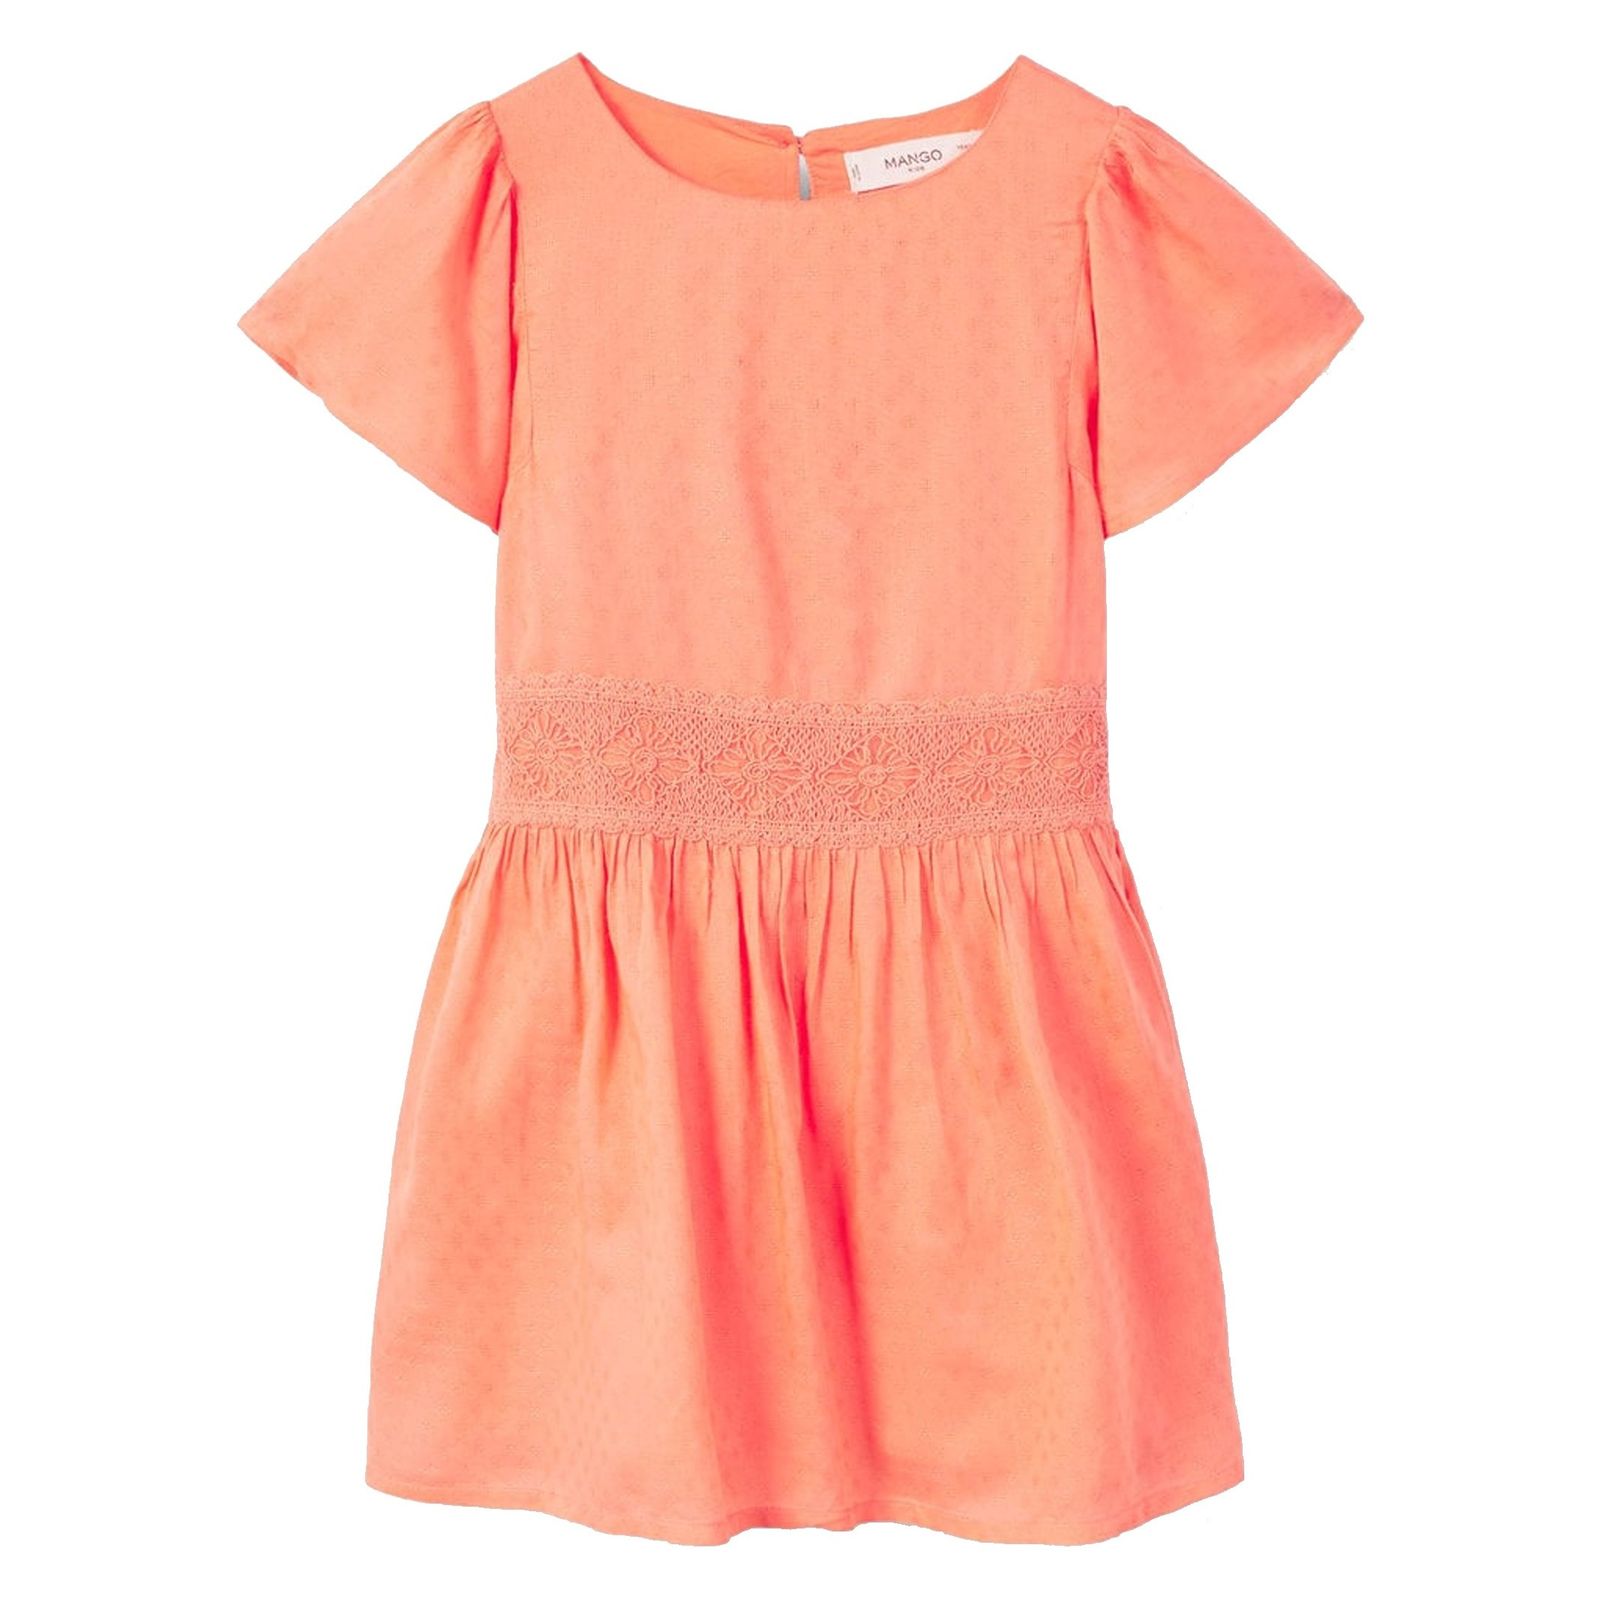 پیراهن ویسکوز روزمره دخترانه - مانگو - نارنجي - 1